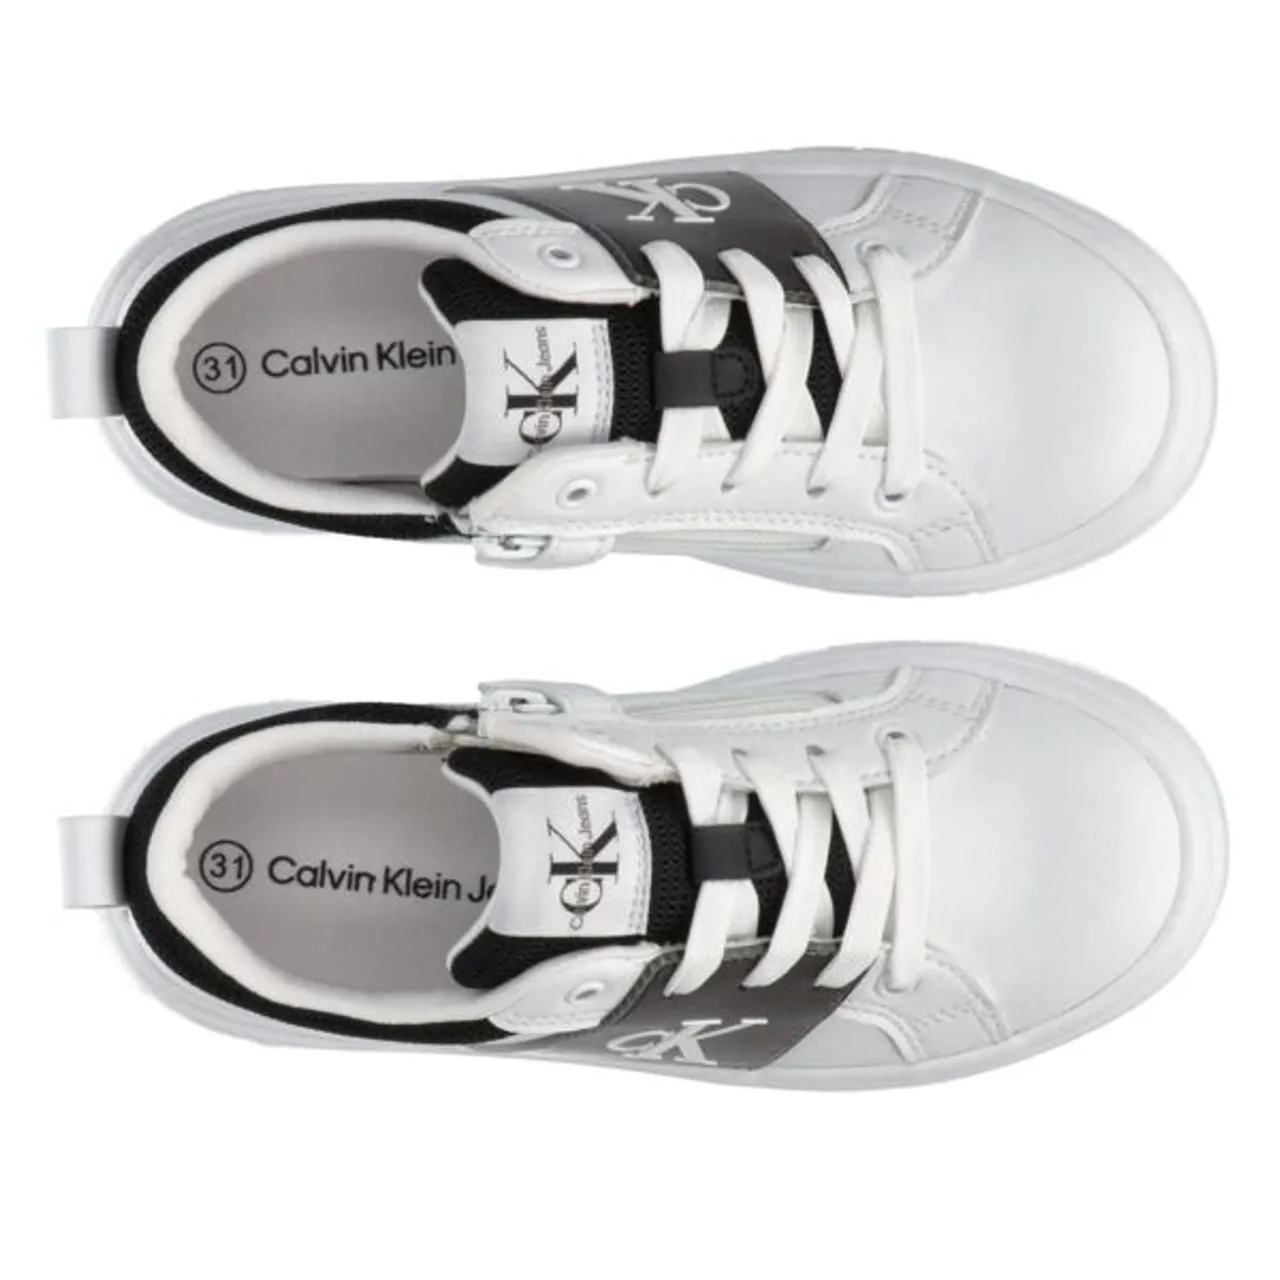 Sneaker CALVIN KLEIN JEANS "LOW CUT LACE-UP SNEAKER" Gr. 36, schwarz-weiß (weiß, schwarz) Kinder Schuhe Sneaker